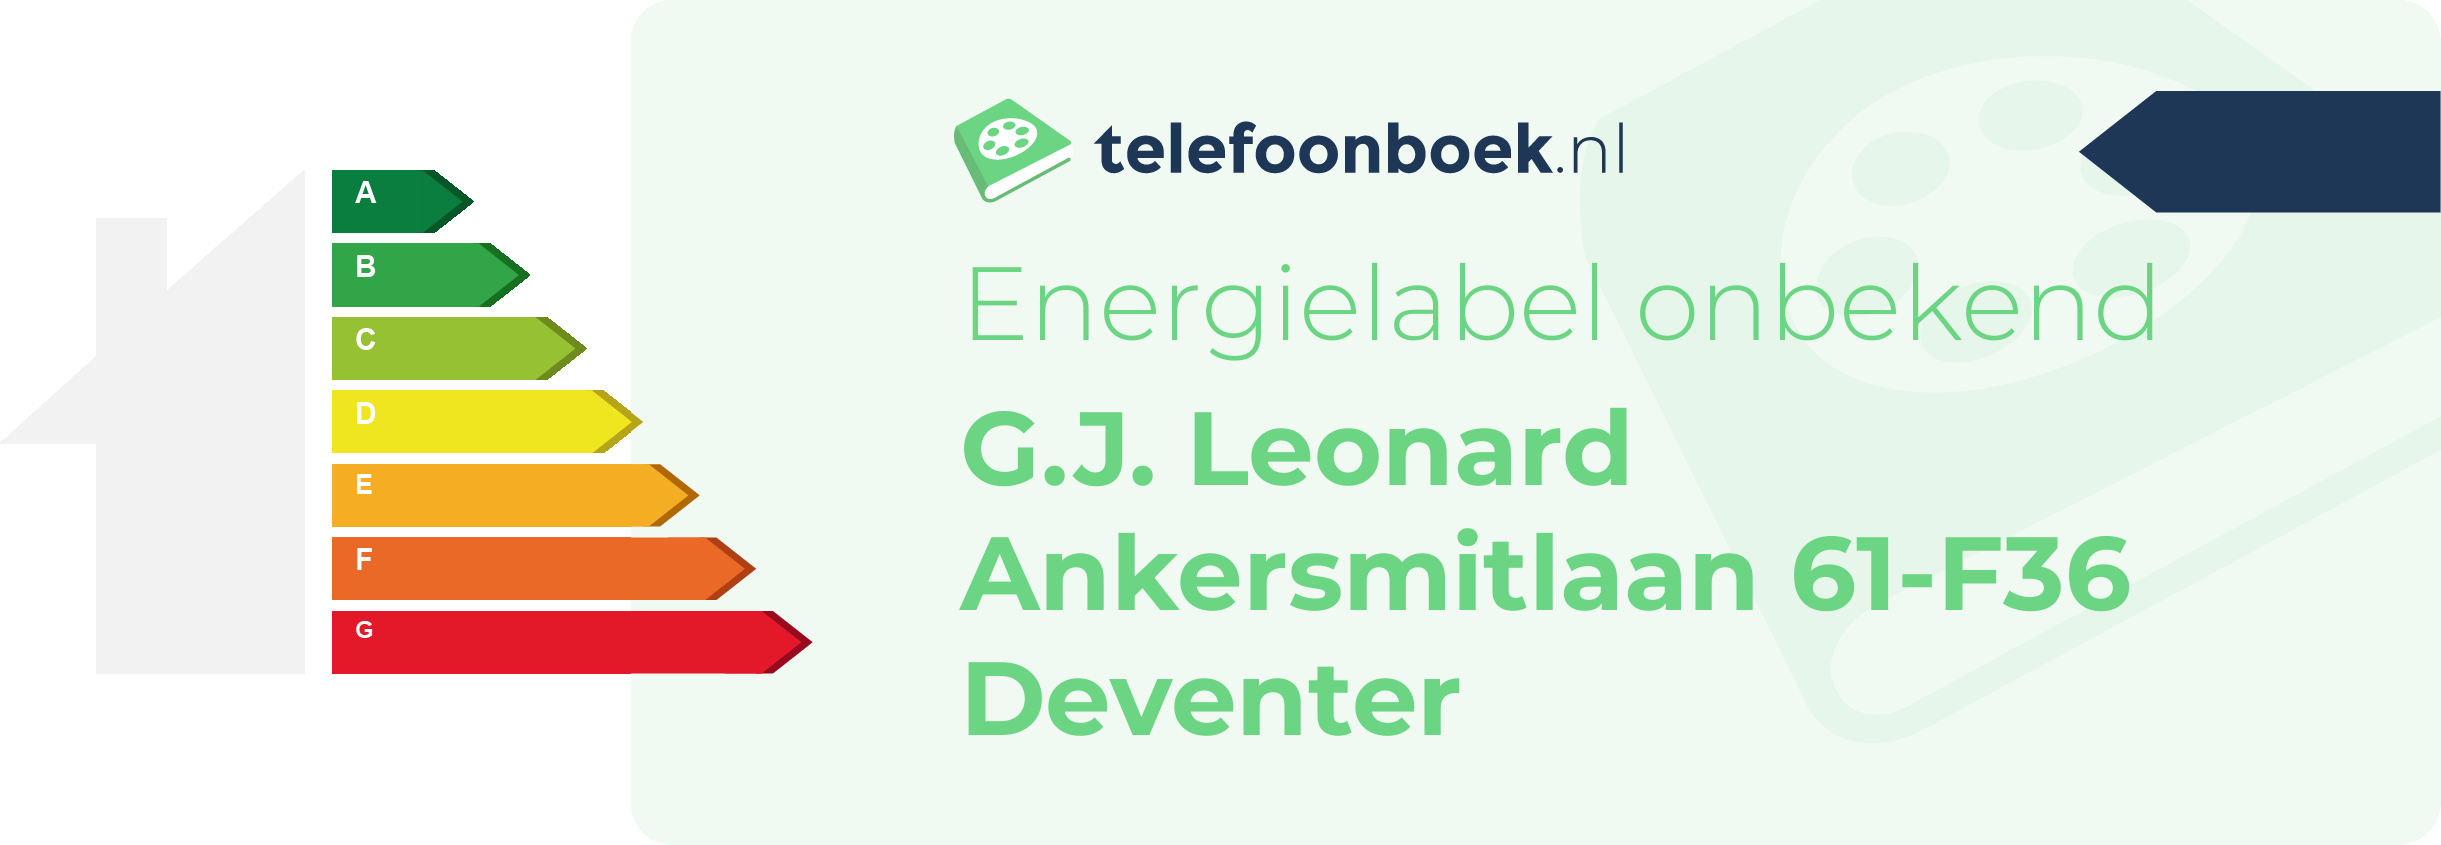 Energielabel G.J. Leonard Ankersmitlaan 61-F36 Deventer